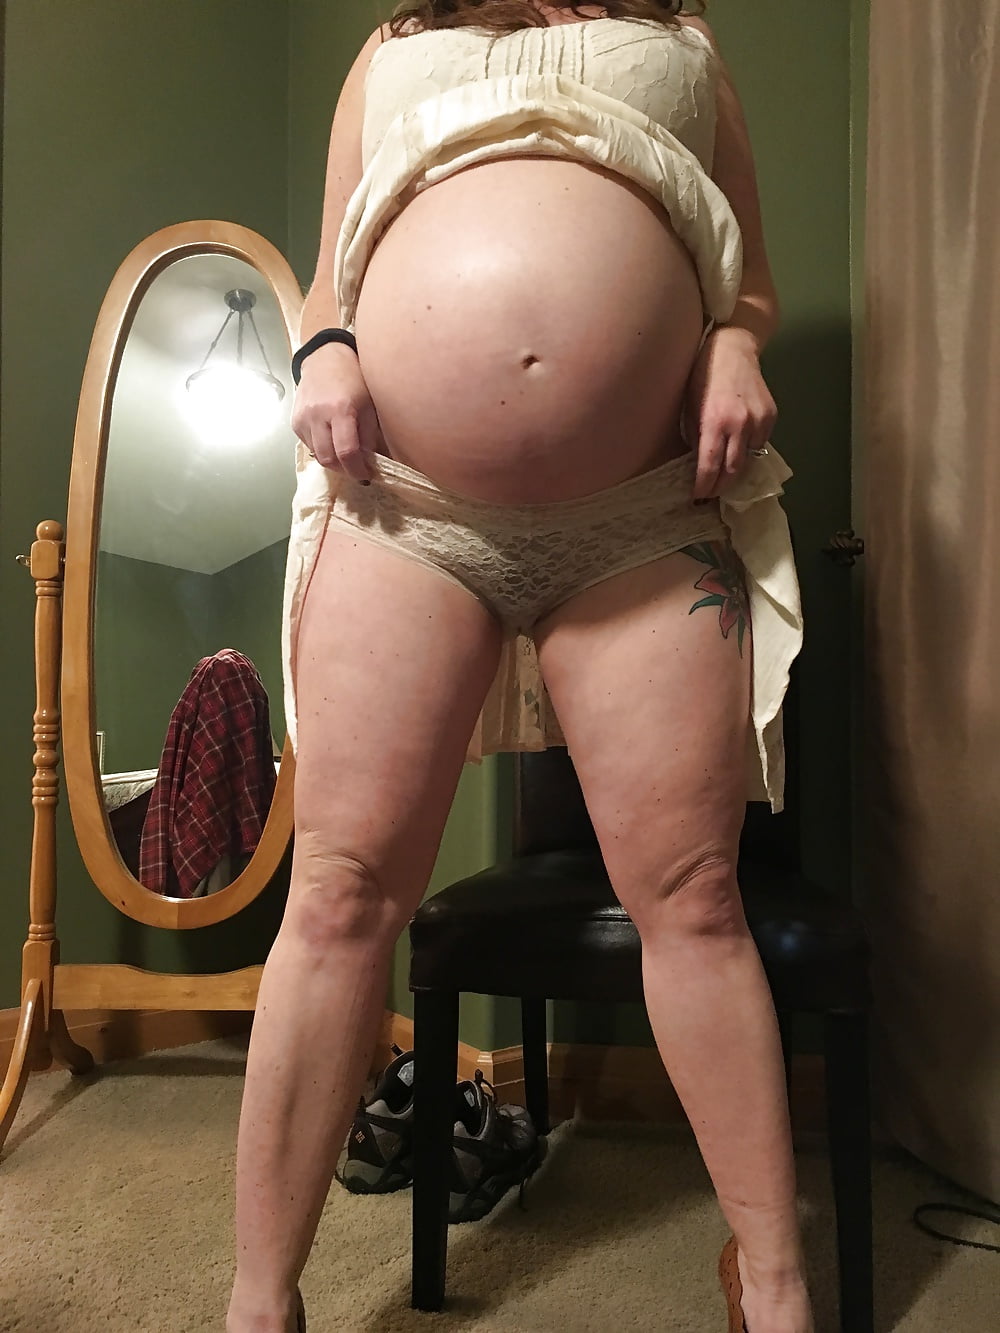 Ver Pregnant wife 36 weeks - 14 fotos en